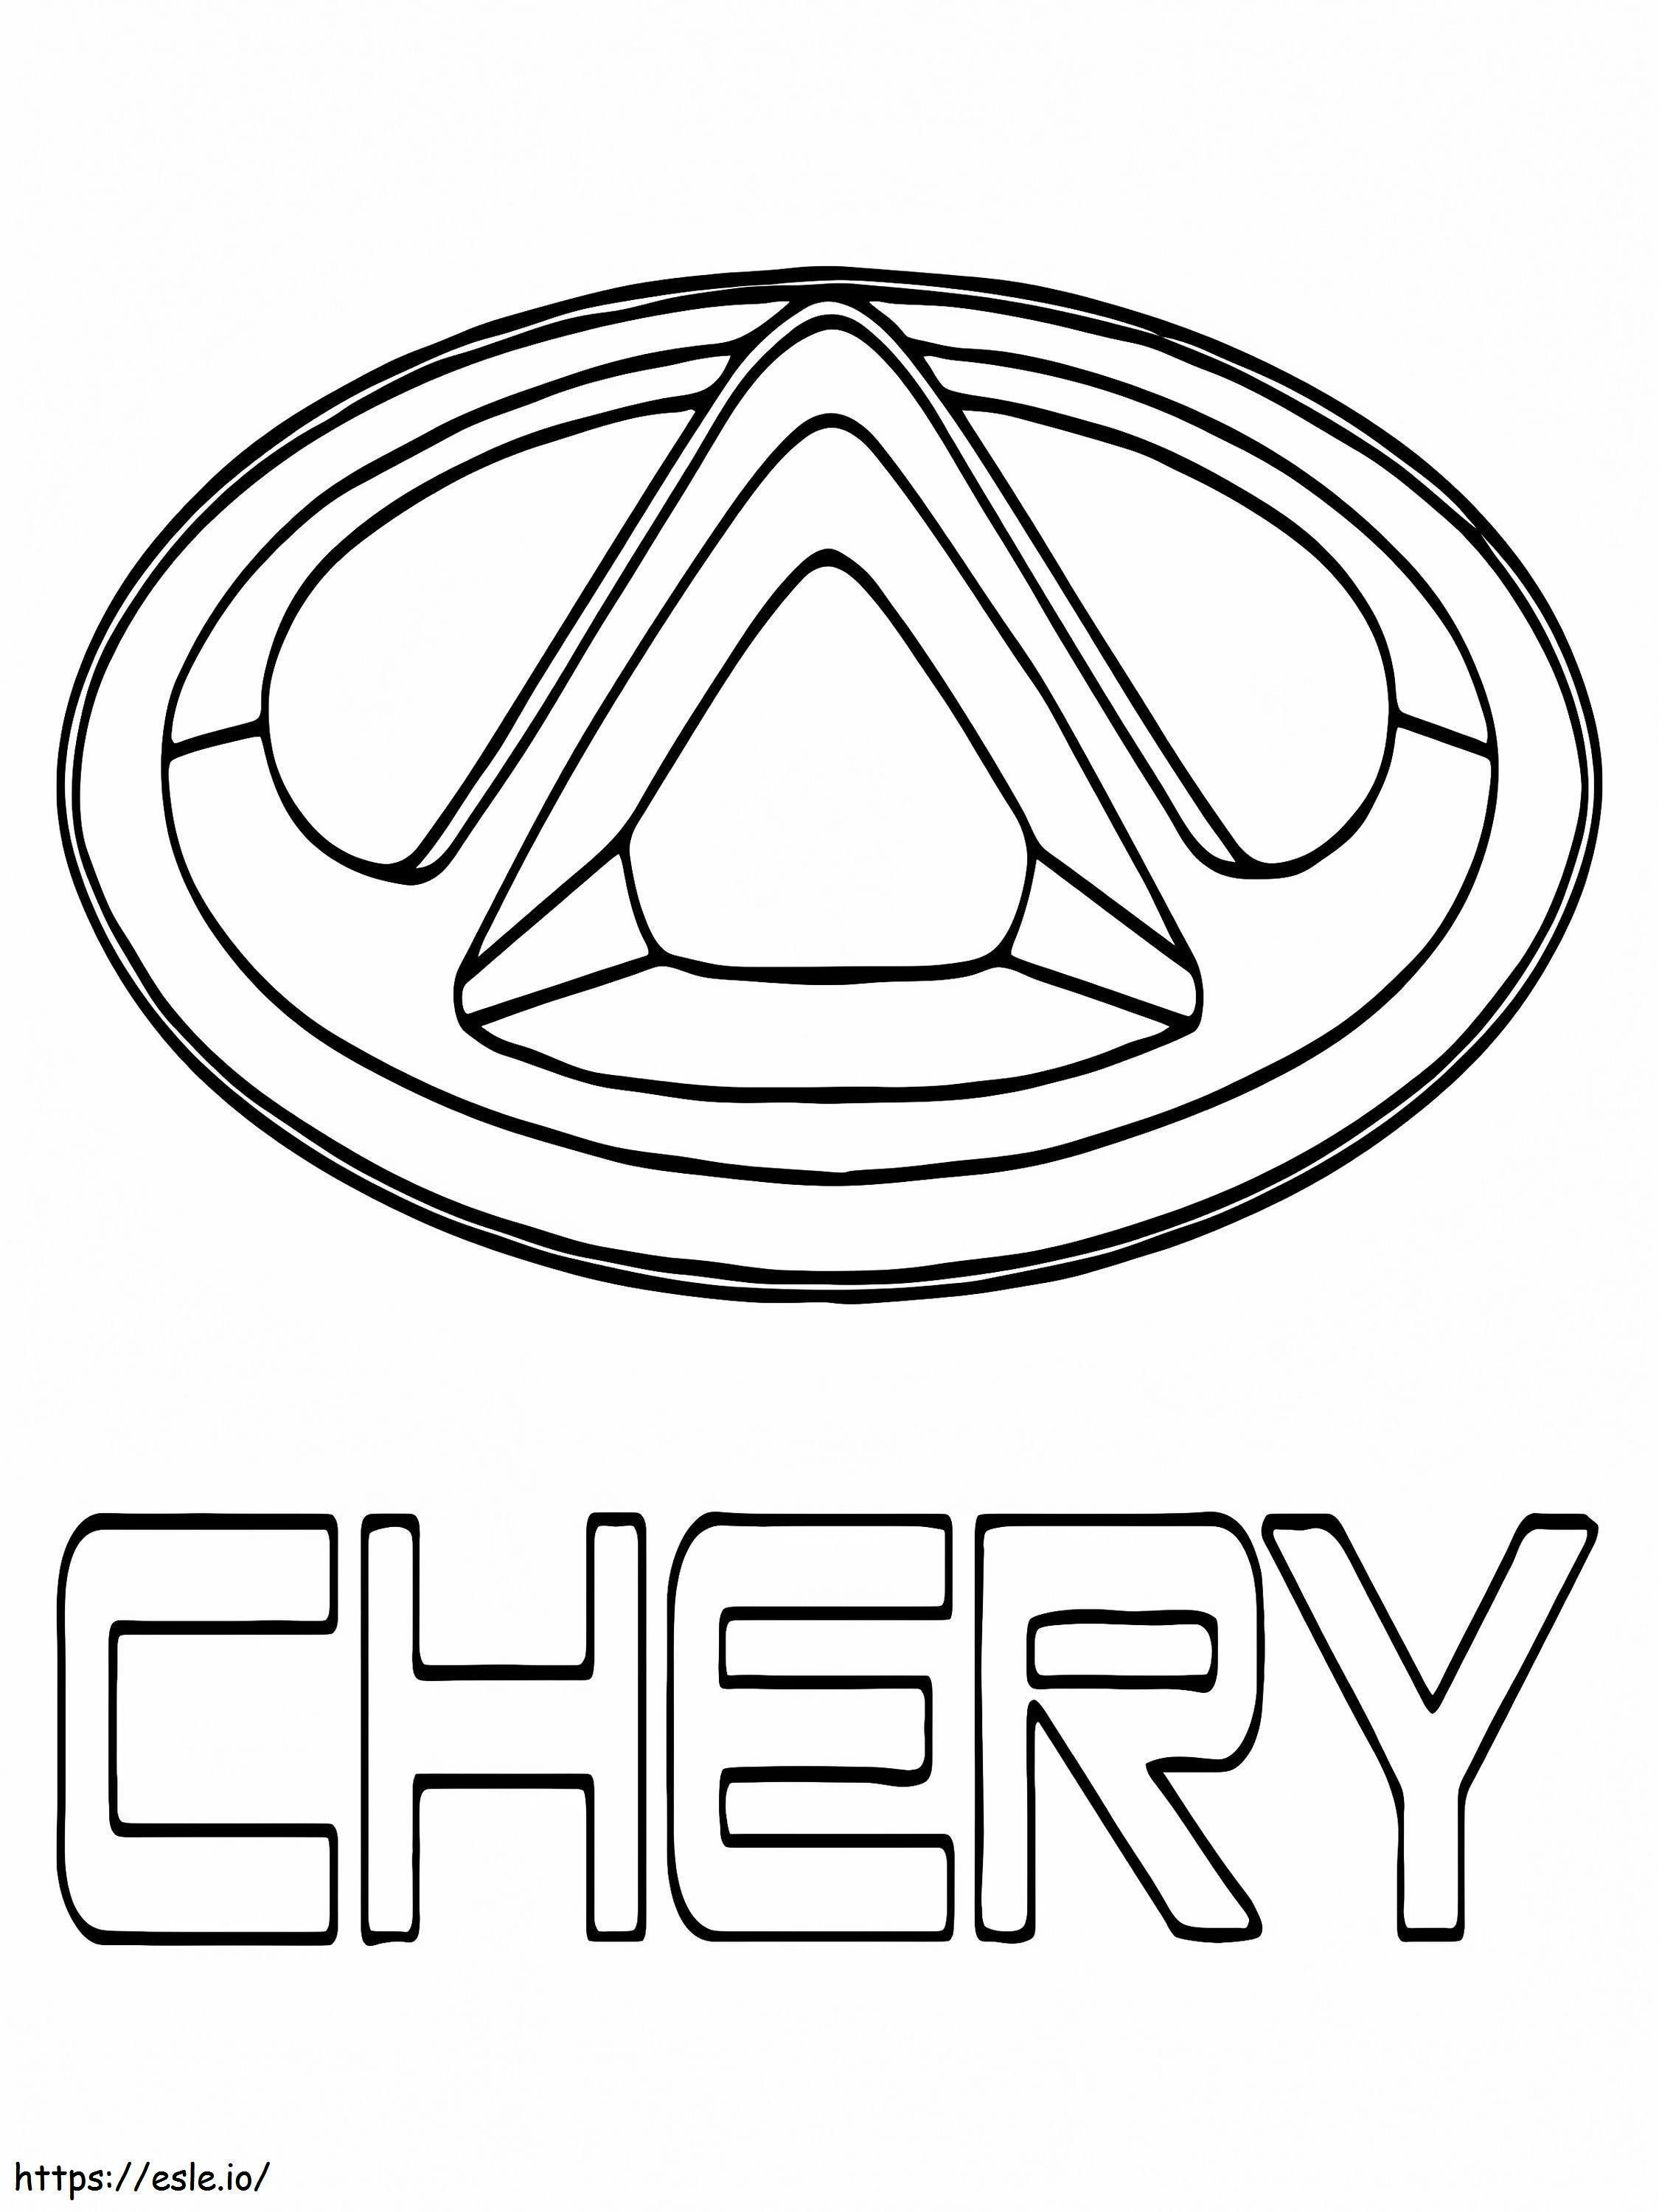 Logo-ul mașinii Chery de colorat